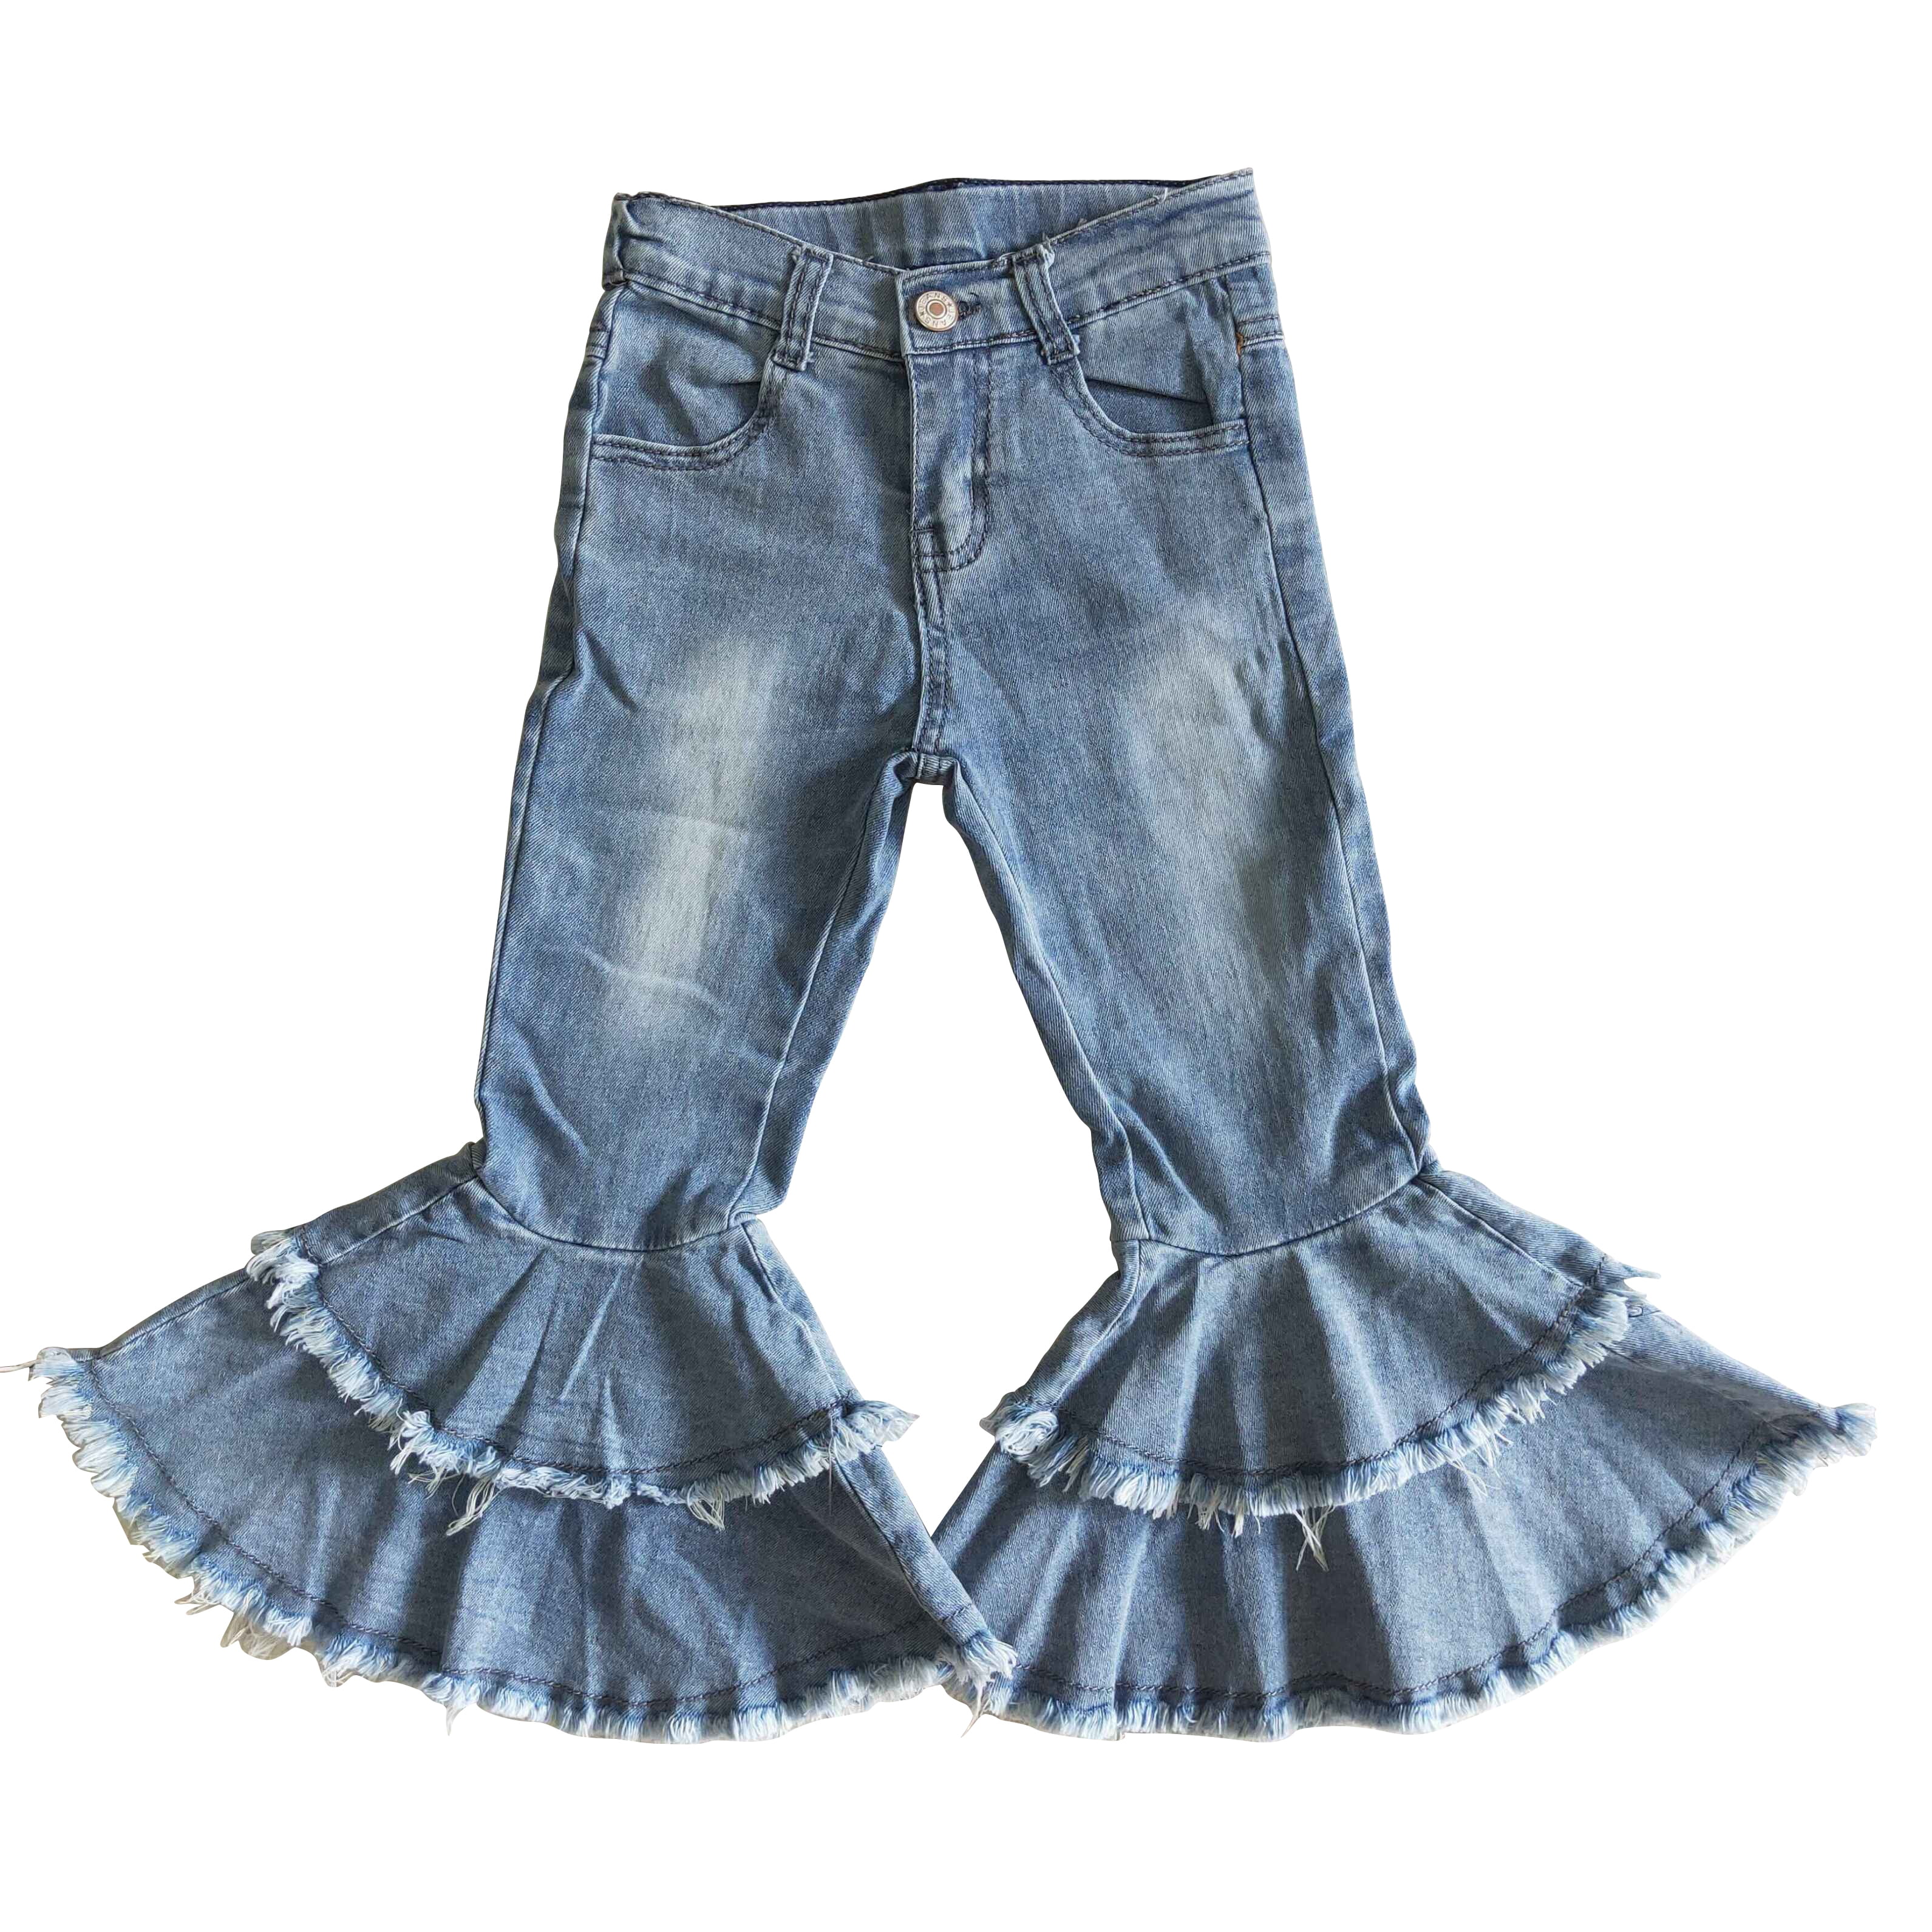 QuickWardrobe Slim Girls Light Blue Jeans - Buy QuickWardrobe Slim Girls  Light Blue Jeans Online at Best Prices in India | Flipkart.com